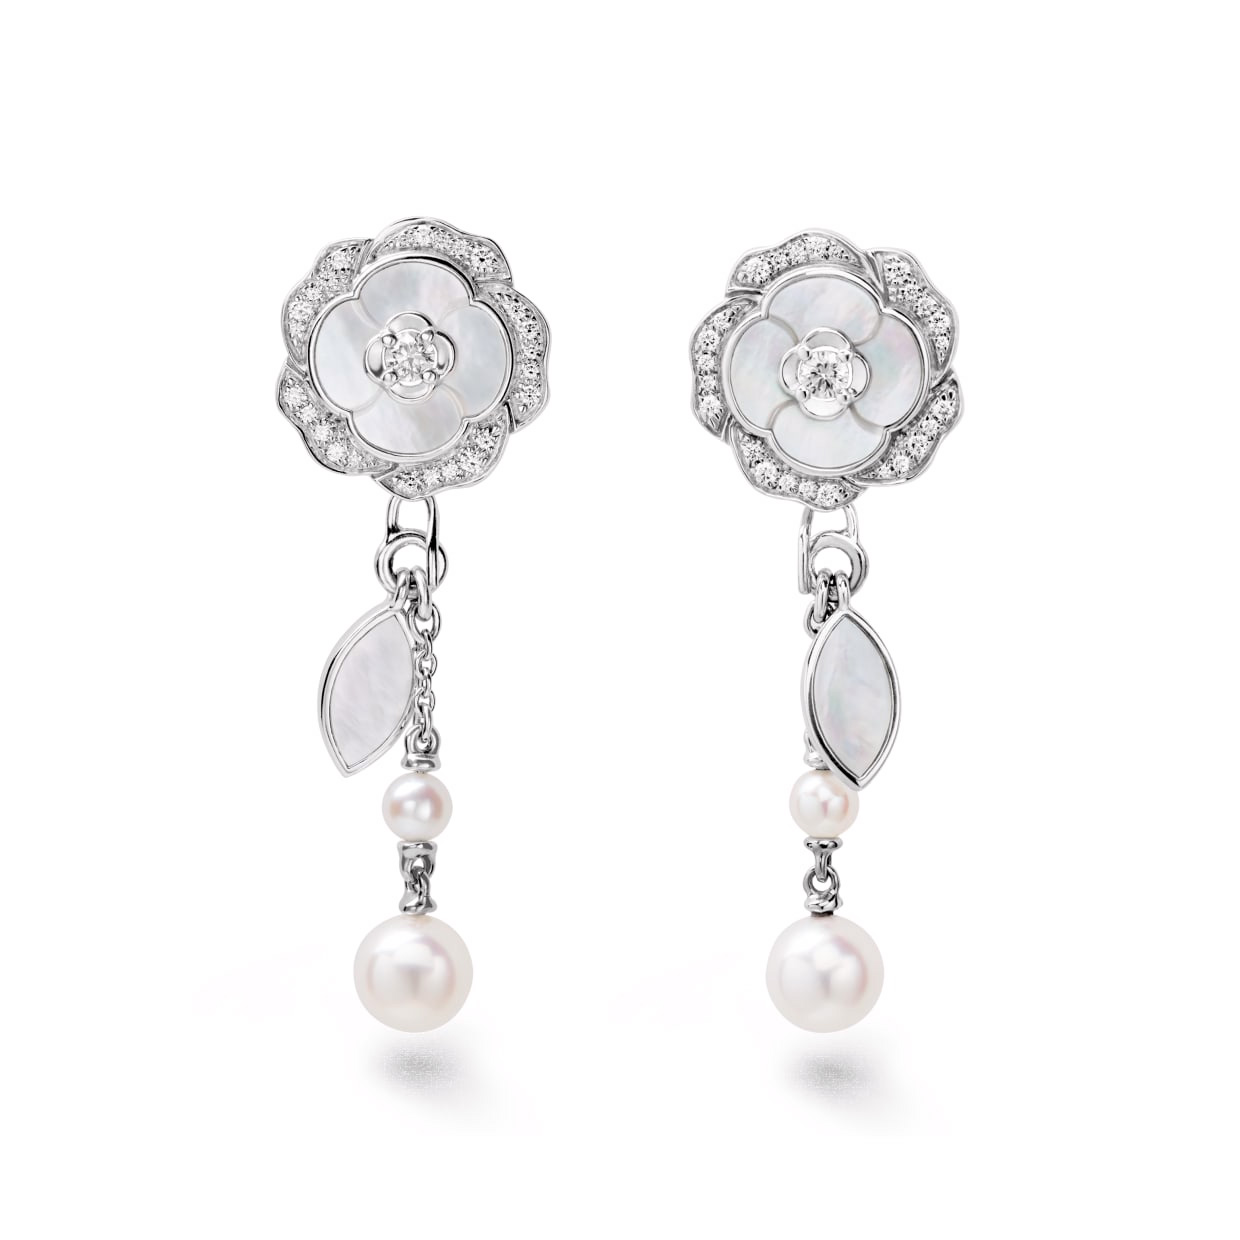 OEM/ODM Jewelry Custom Design 925 Sterling Silver earrings in 18K white gold